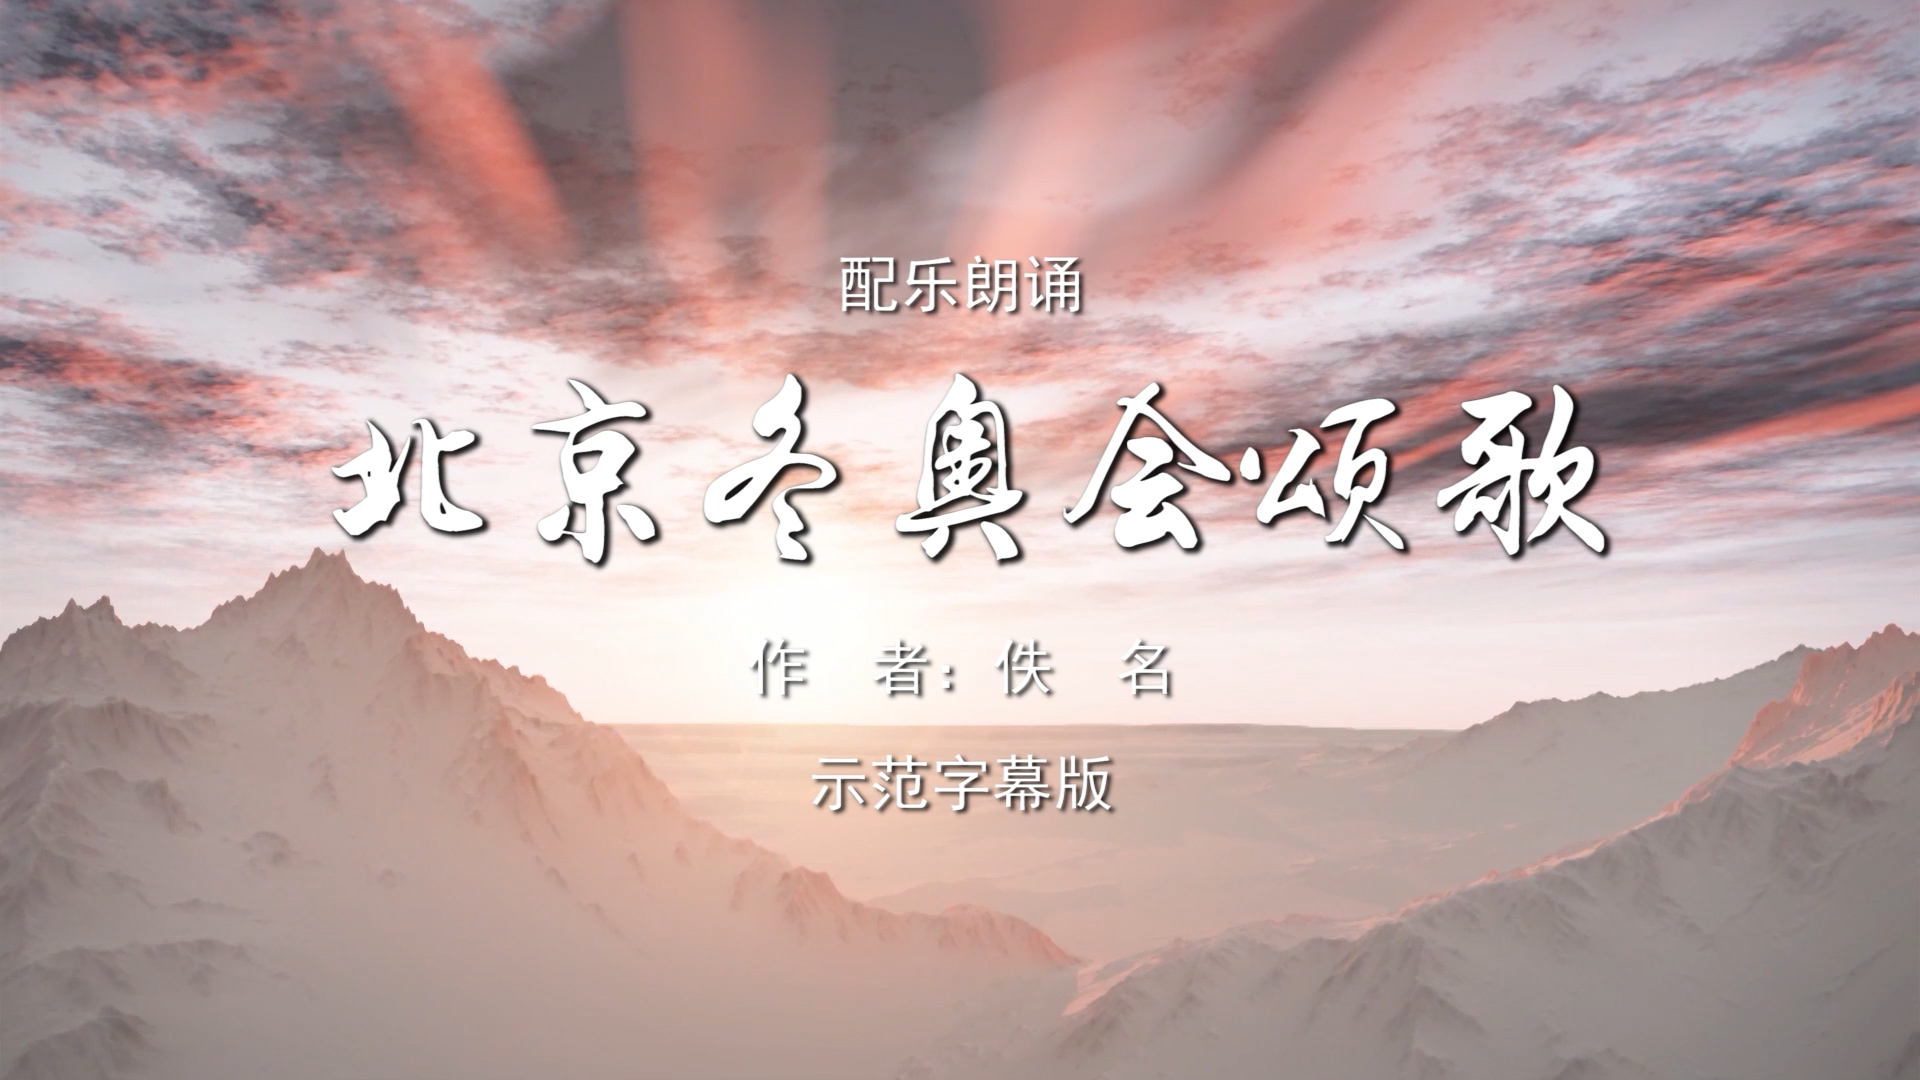 北京冬奥会颂歌 少儿诗歌朗诵配乐伴奏舞台演出LED背景视频素材TV